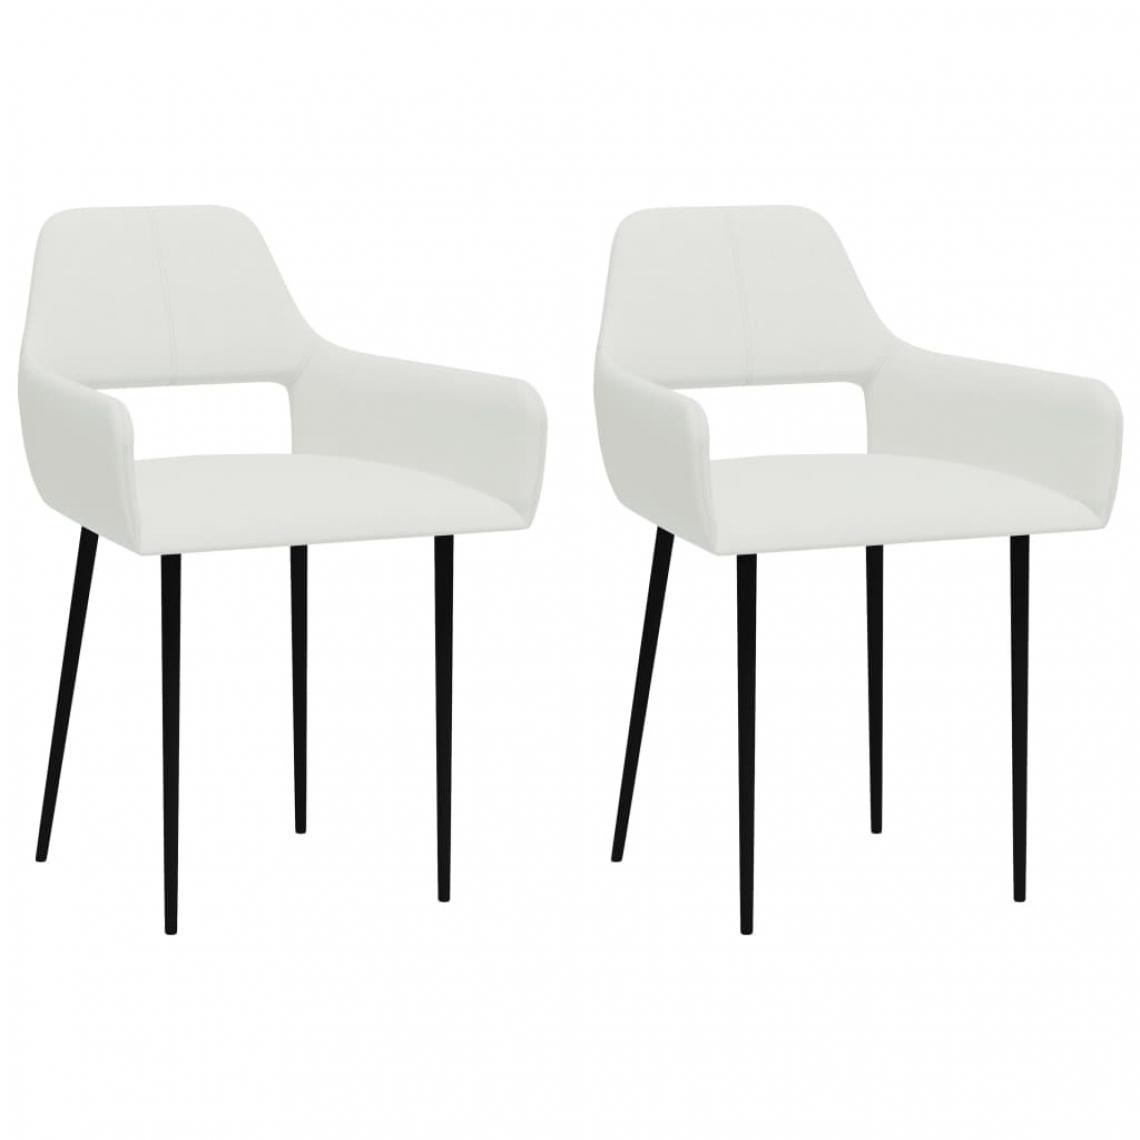 Icaverne - Contemporain Fauteuils et chaises categorie Bucarest Chaises de salle à manger 2 pcs Blanc Tissu - Chaises